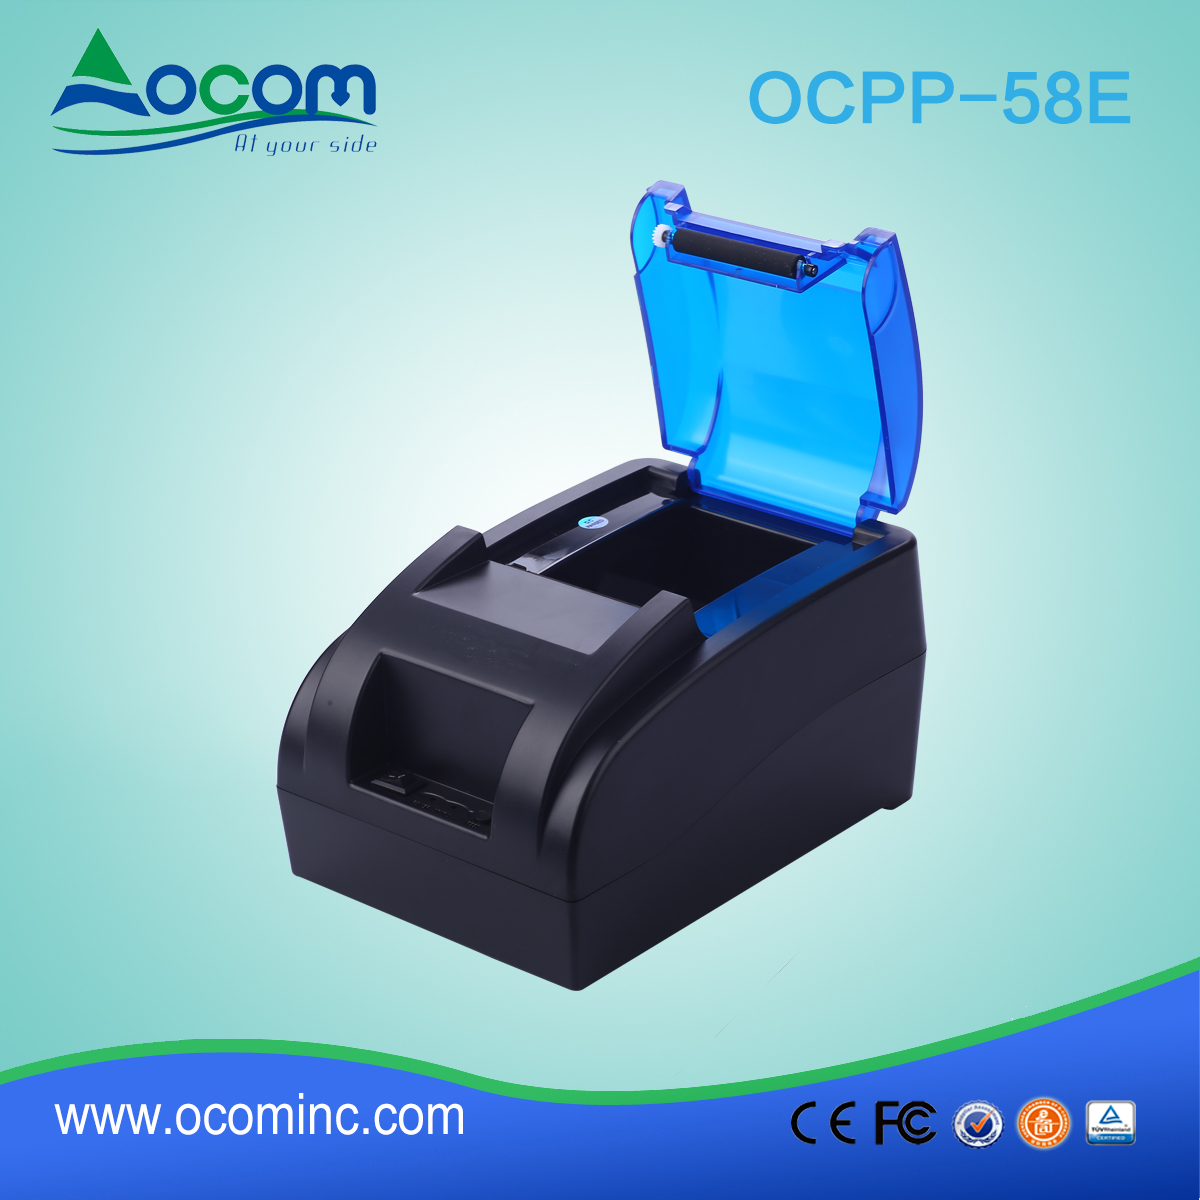 Impressora de recibos térmica OCPP -58E-U de 58 mm com adaptador de energia integrado